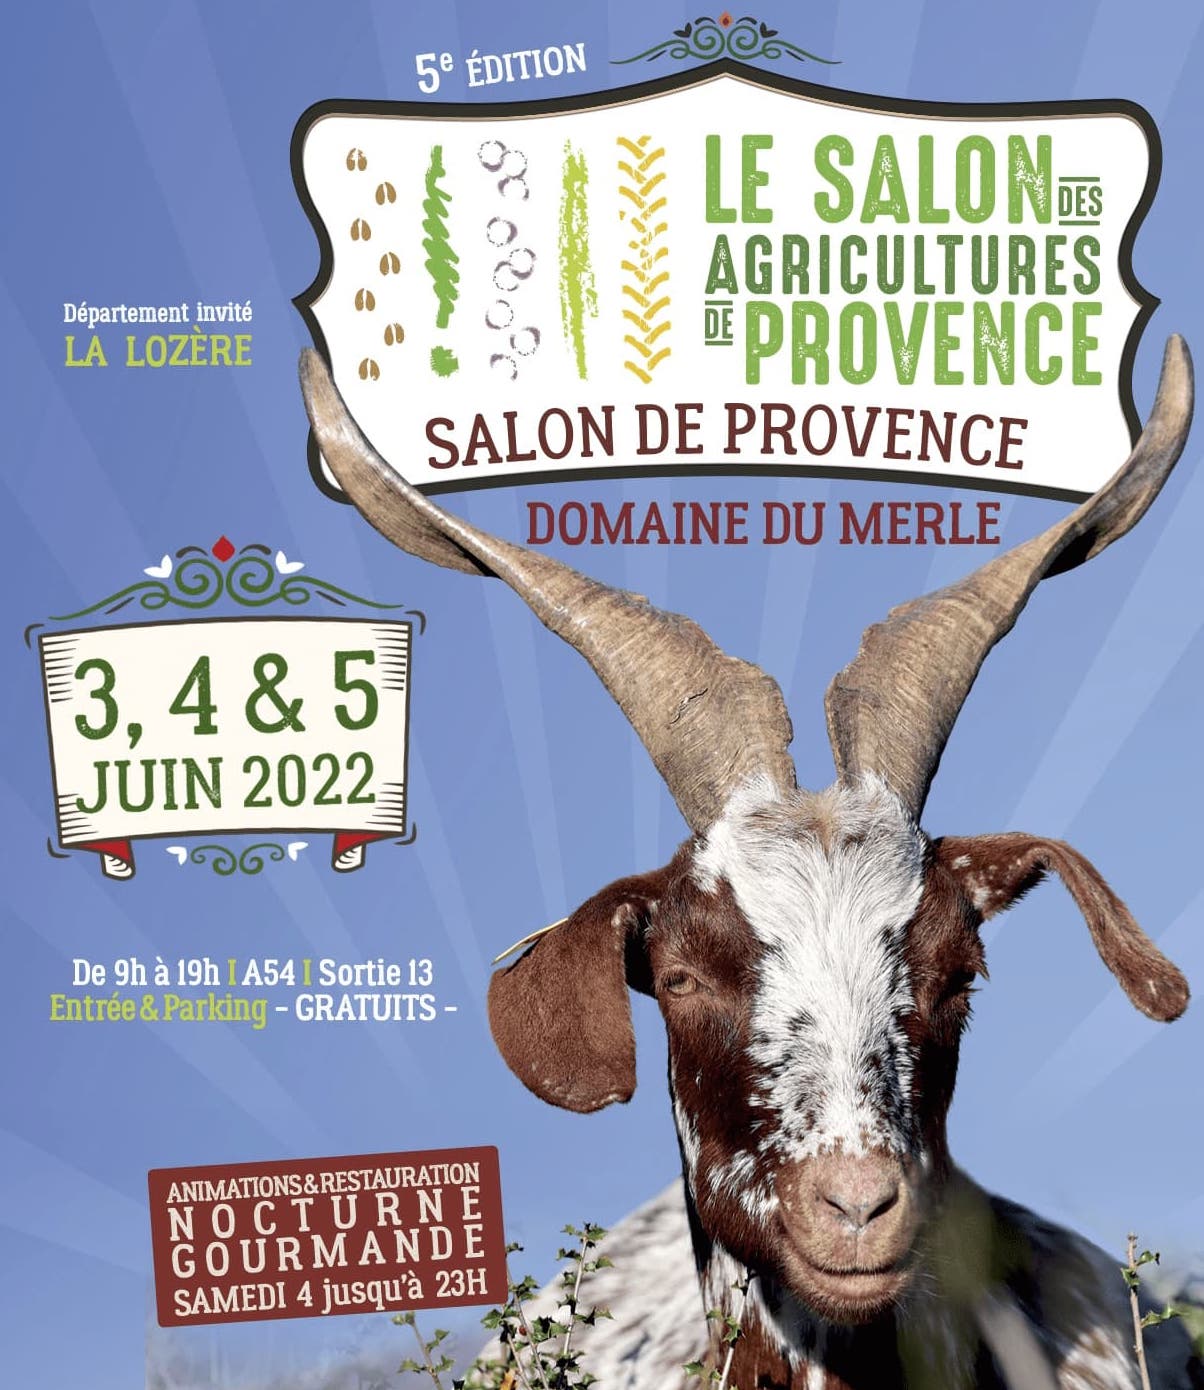 Salon des Agricultures de Provence 2022